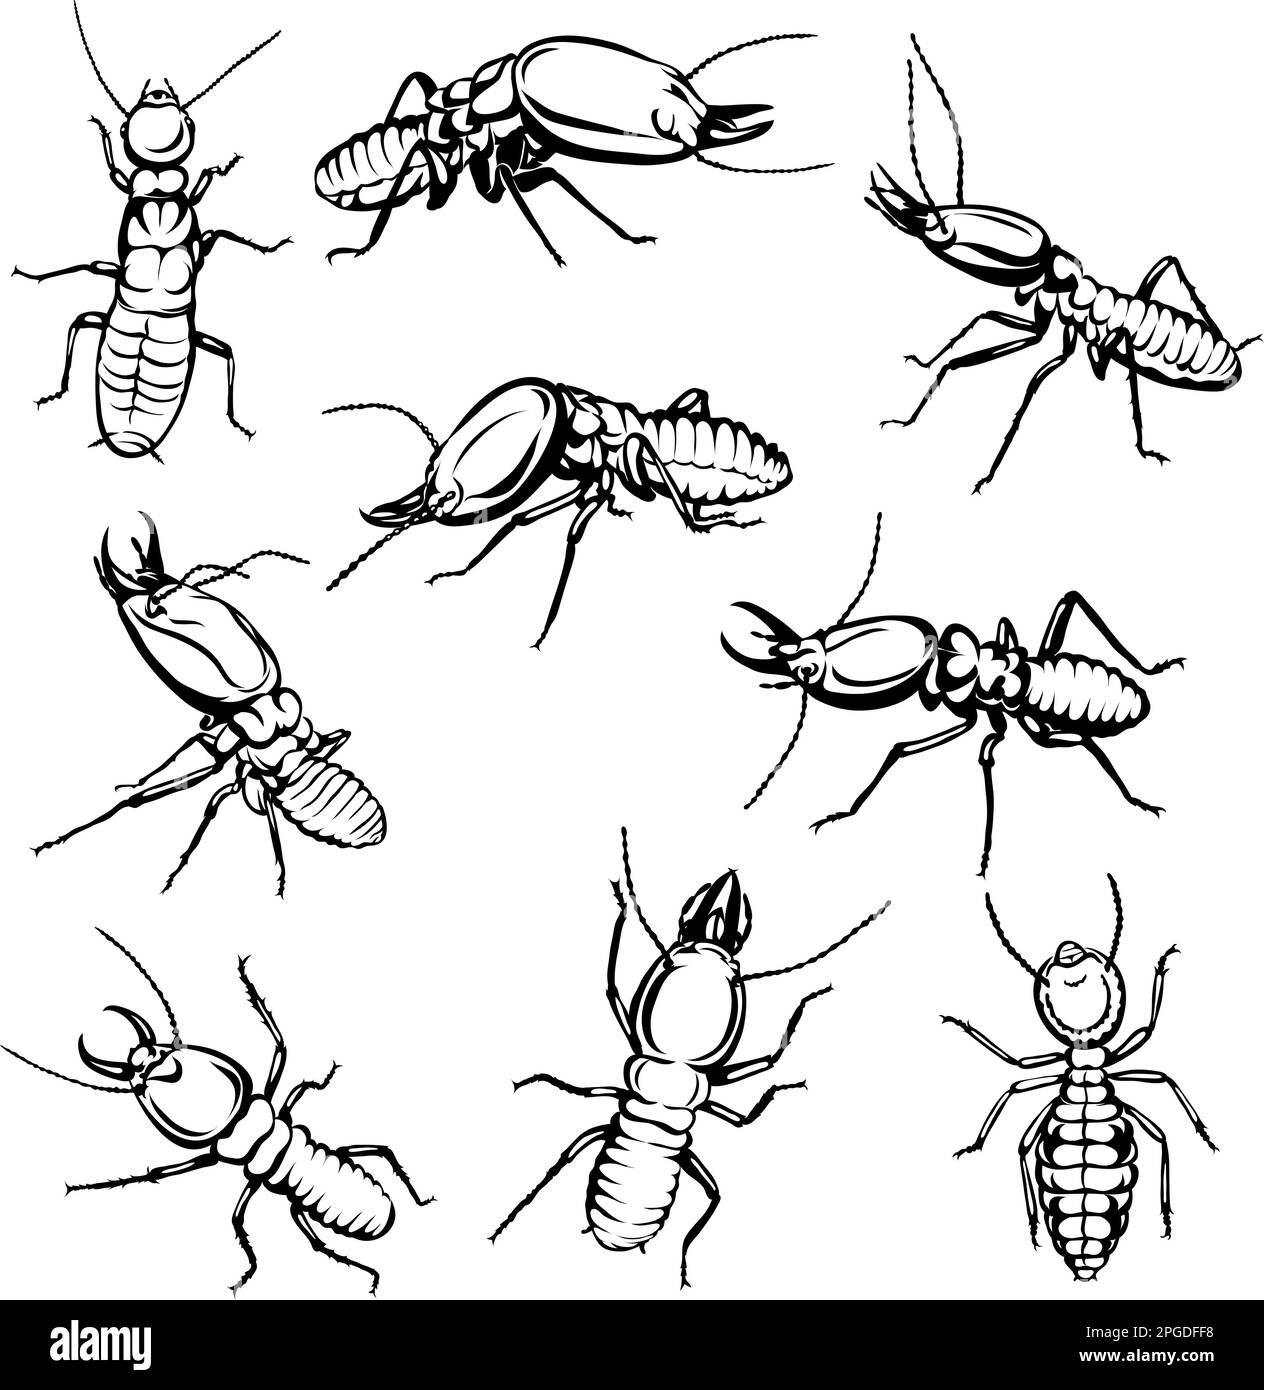 termita, insecto, varias poses, movimientos y ángulos, negro, blanco, silueta, vector, dibujo, conjunto, boceto, hormiguero, línea, trazo, naturaleza Ilustración del Vector